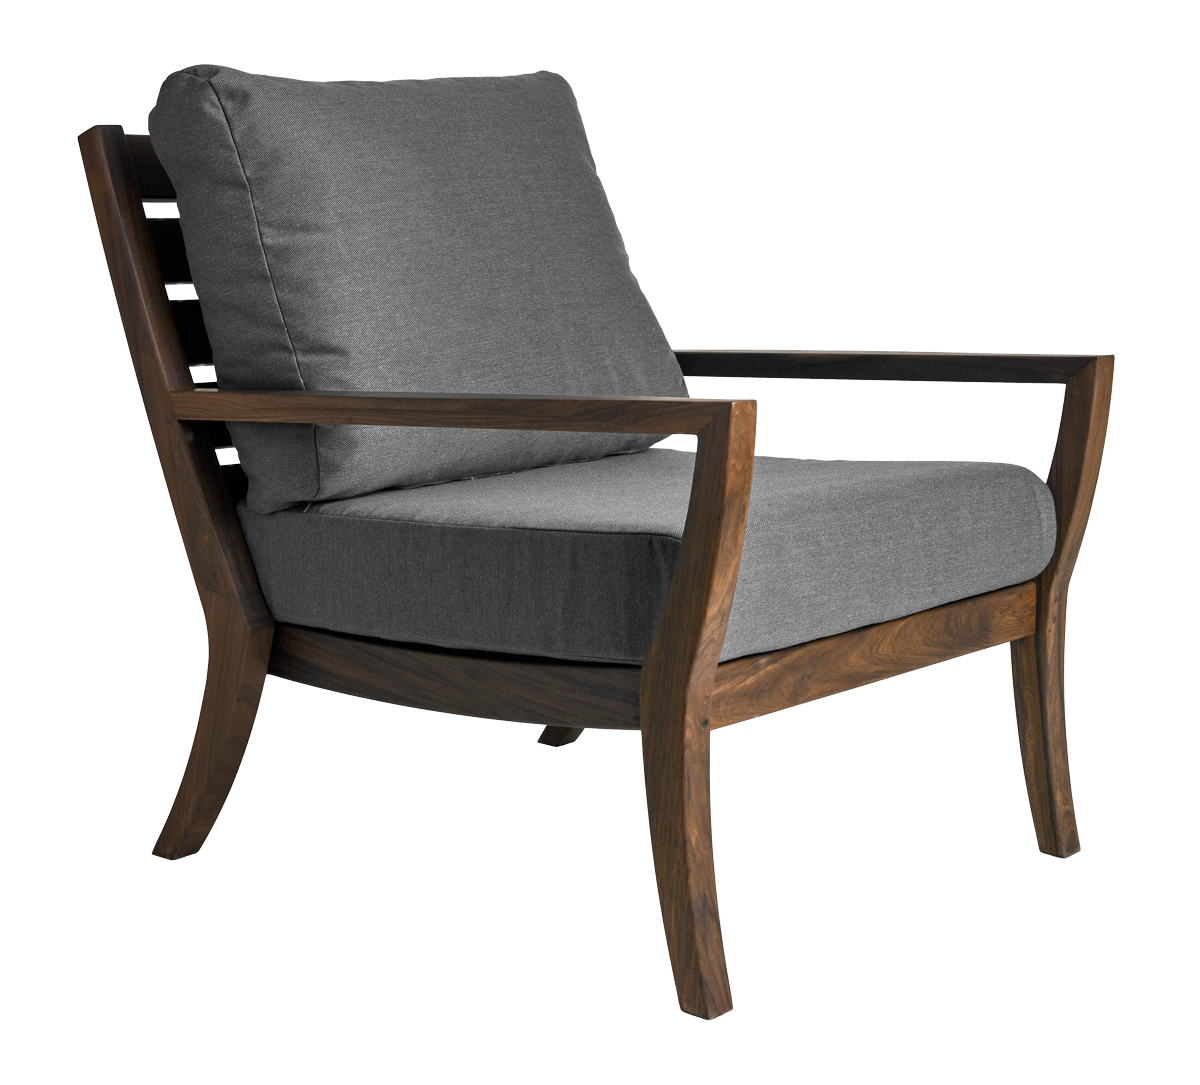 Laguna Lounge Chair